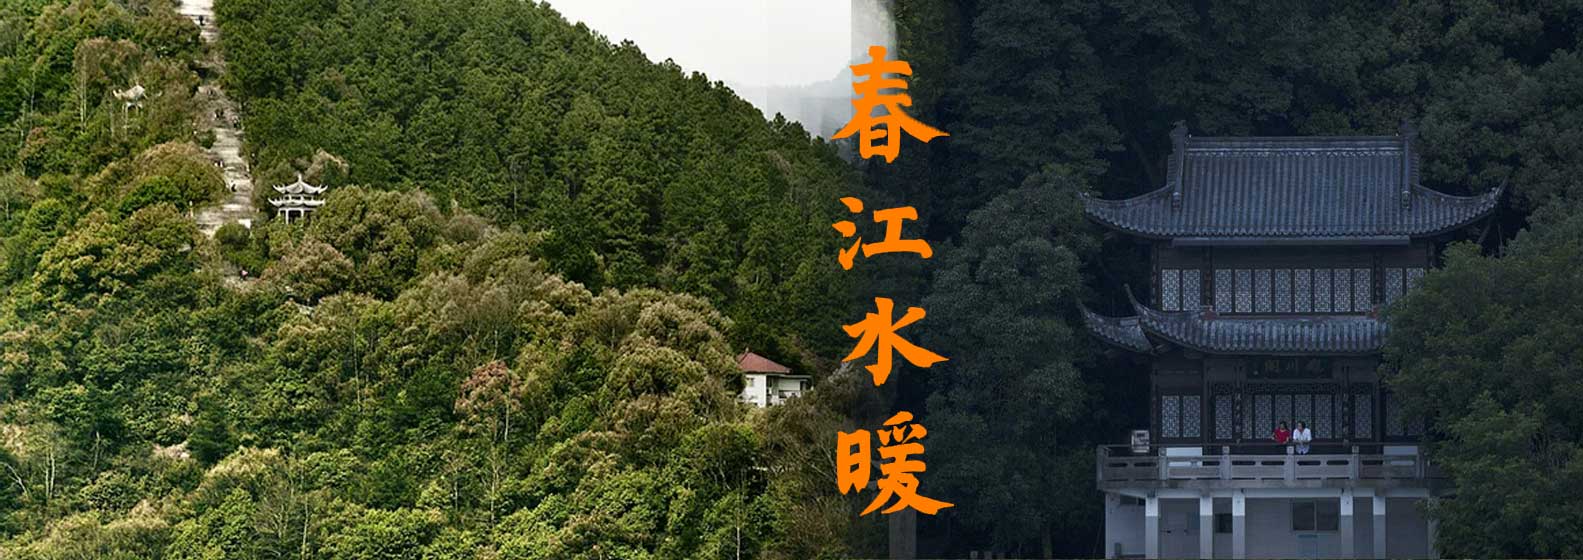 Dwelling in the Fuchun Mountains - Header Image